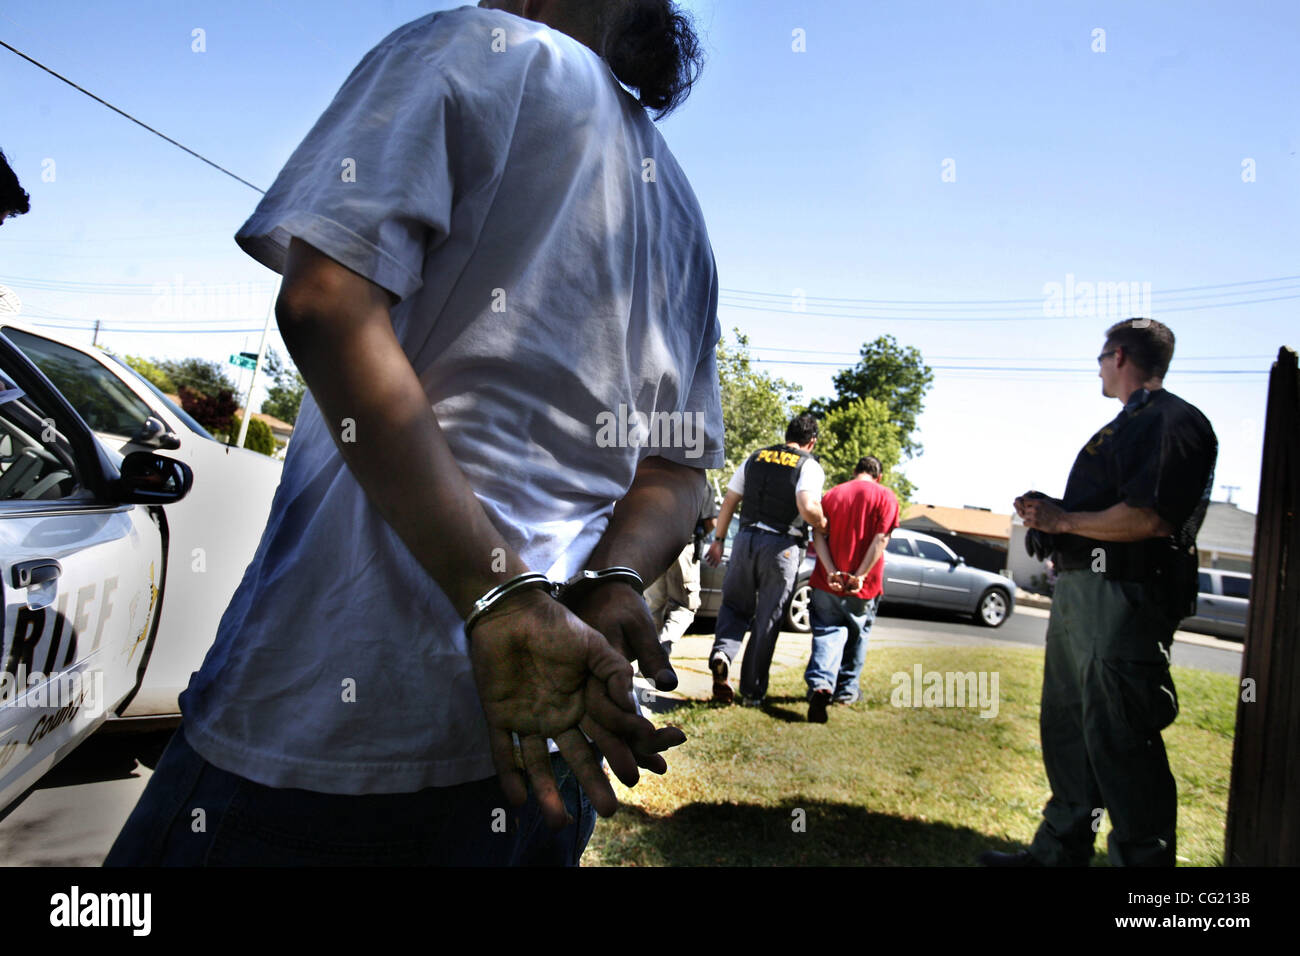 Mitglied einer mutmaßlichen Bande ist Hand gefesselt wie der andere ist weit entfernten Hintergrund, da beide Optionsscheine für ihre Verhaftung hatte. Strafverfolgungsbehörden aus in der gesamten Region beendet einen zweitägigen Sweep der Banden.  Bild 19. Juni 2007. Sacramento Bee Foto Bryan Patrick Stockfoto